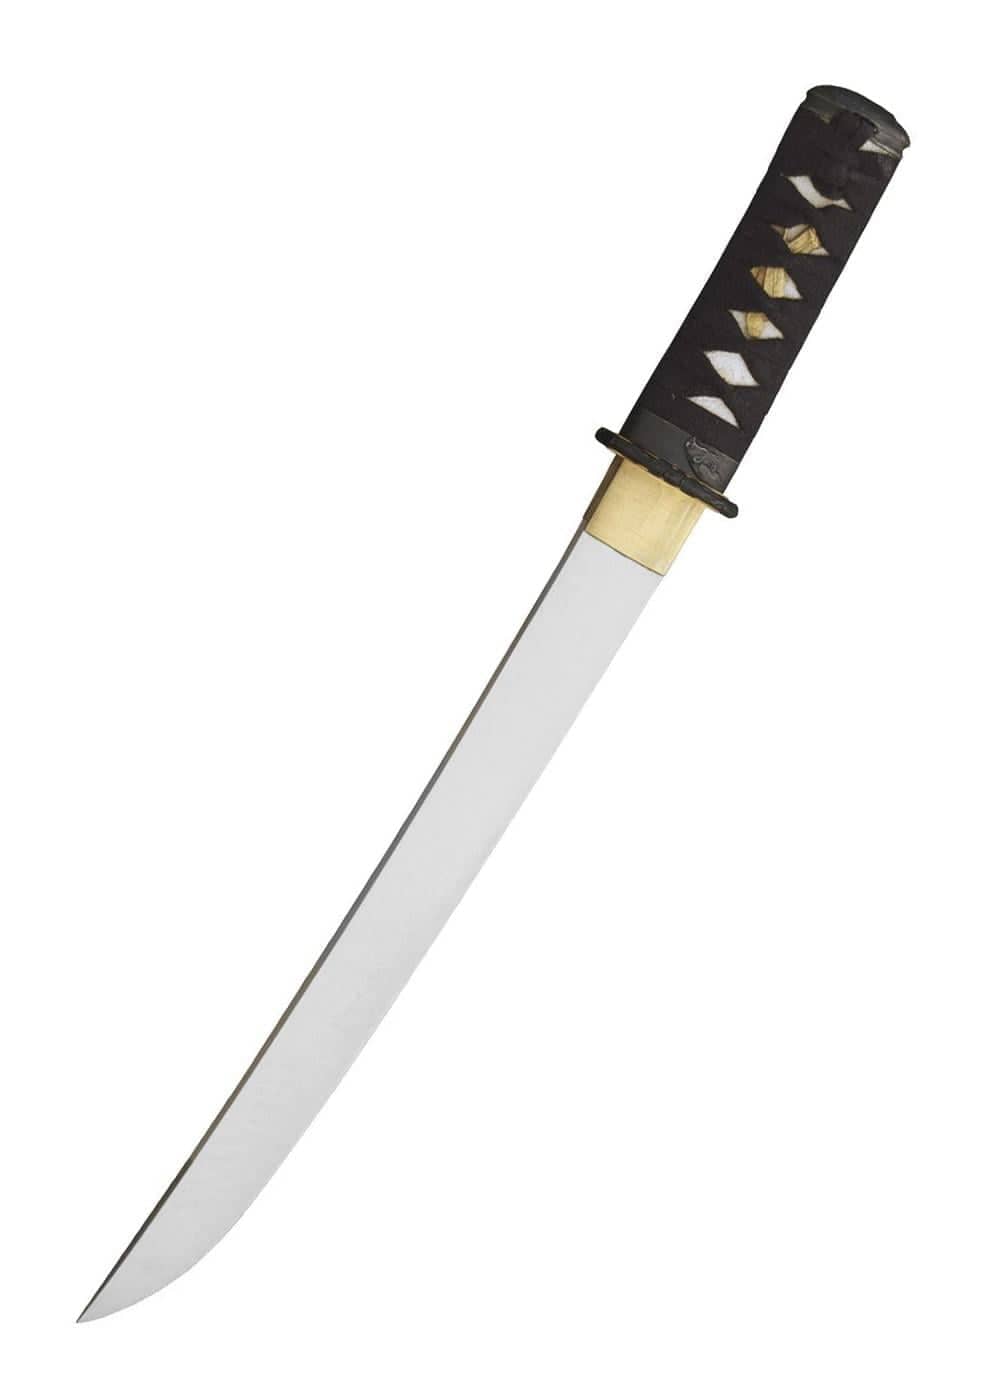 Cuchillo táctico 32390 Tokisu Musashi con hoja tanto japonesa y funda. -  Ganivetería Roca